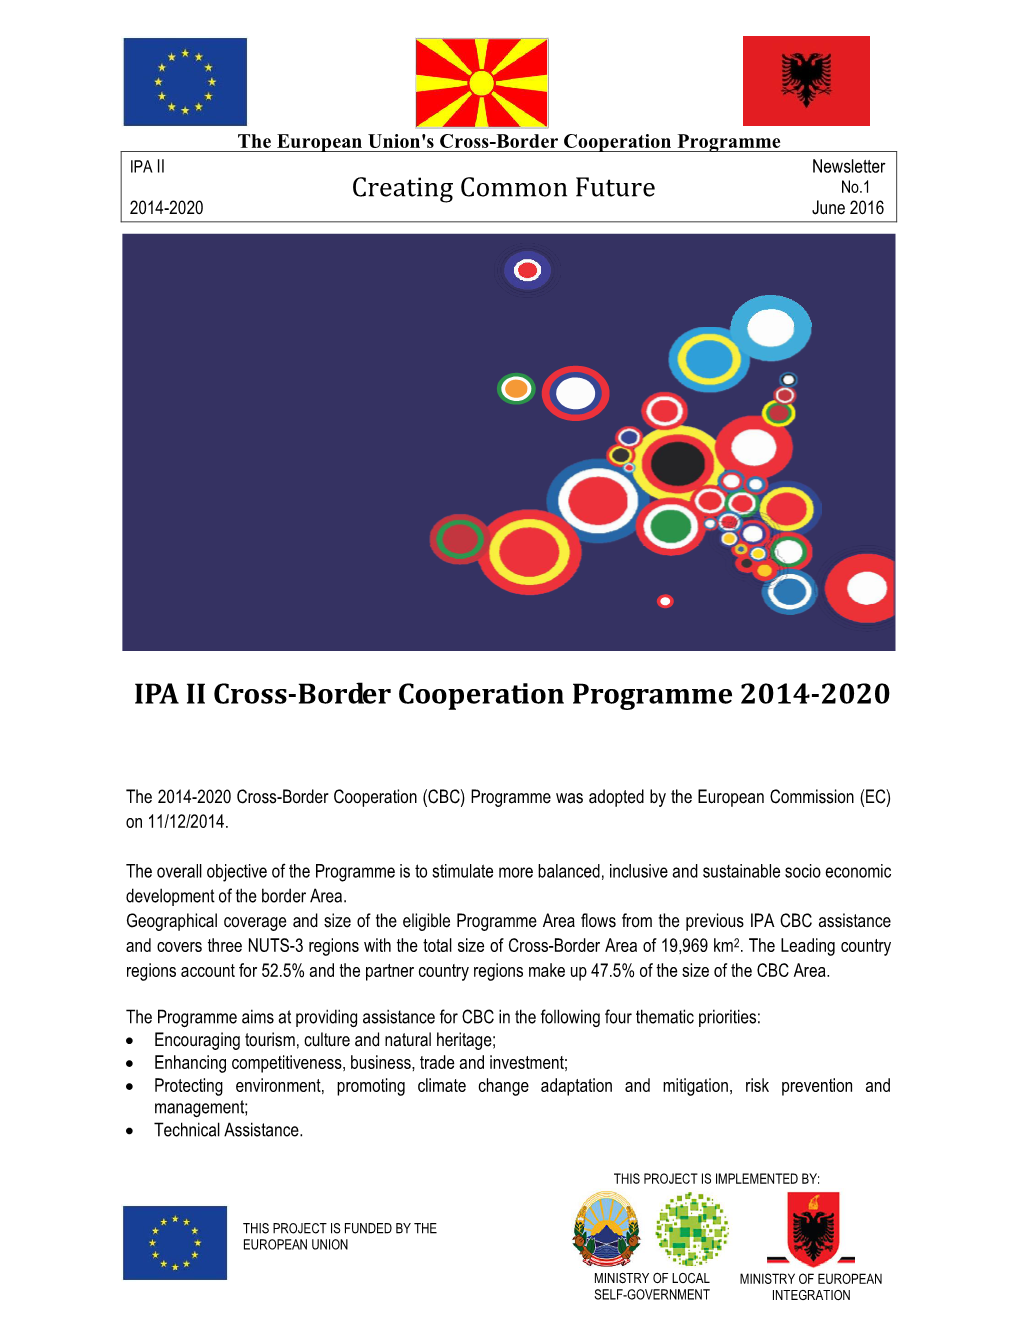 IPA II Cross-Border Cooperation Programme 2014-2020